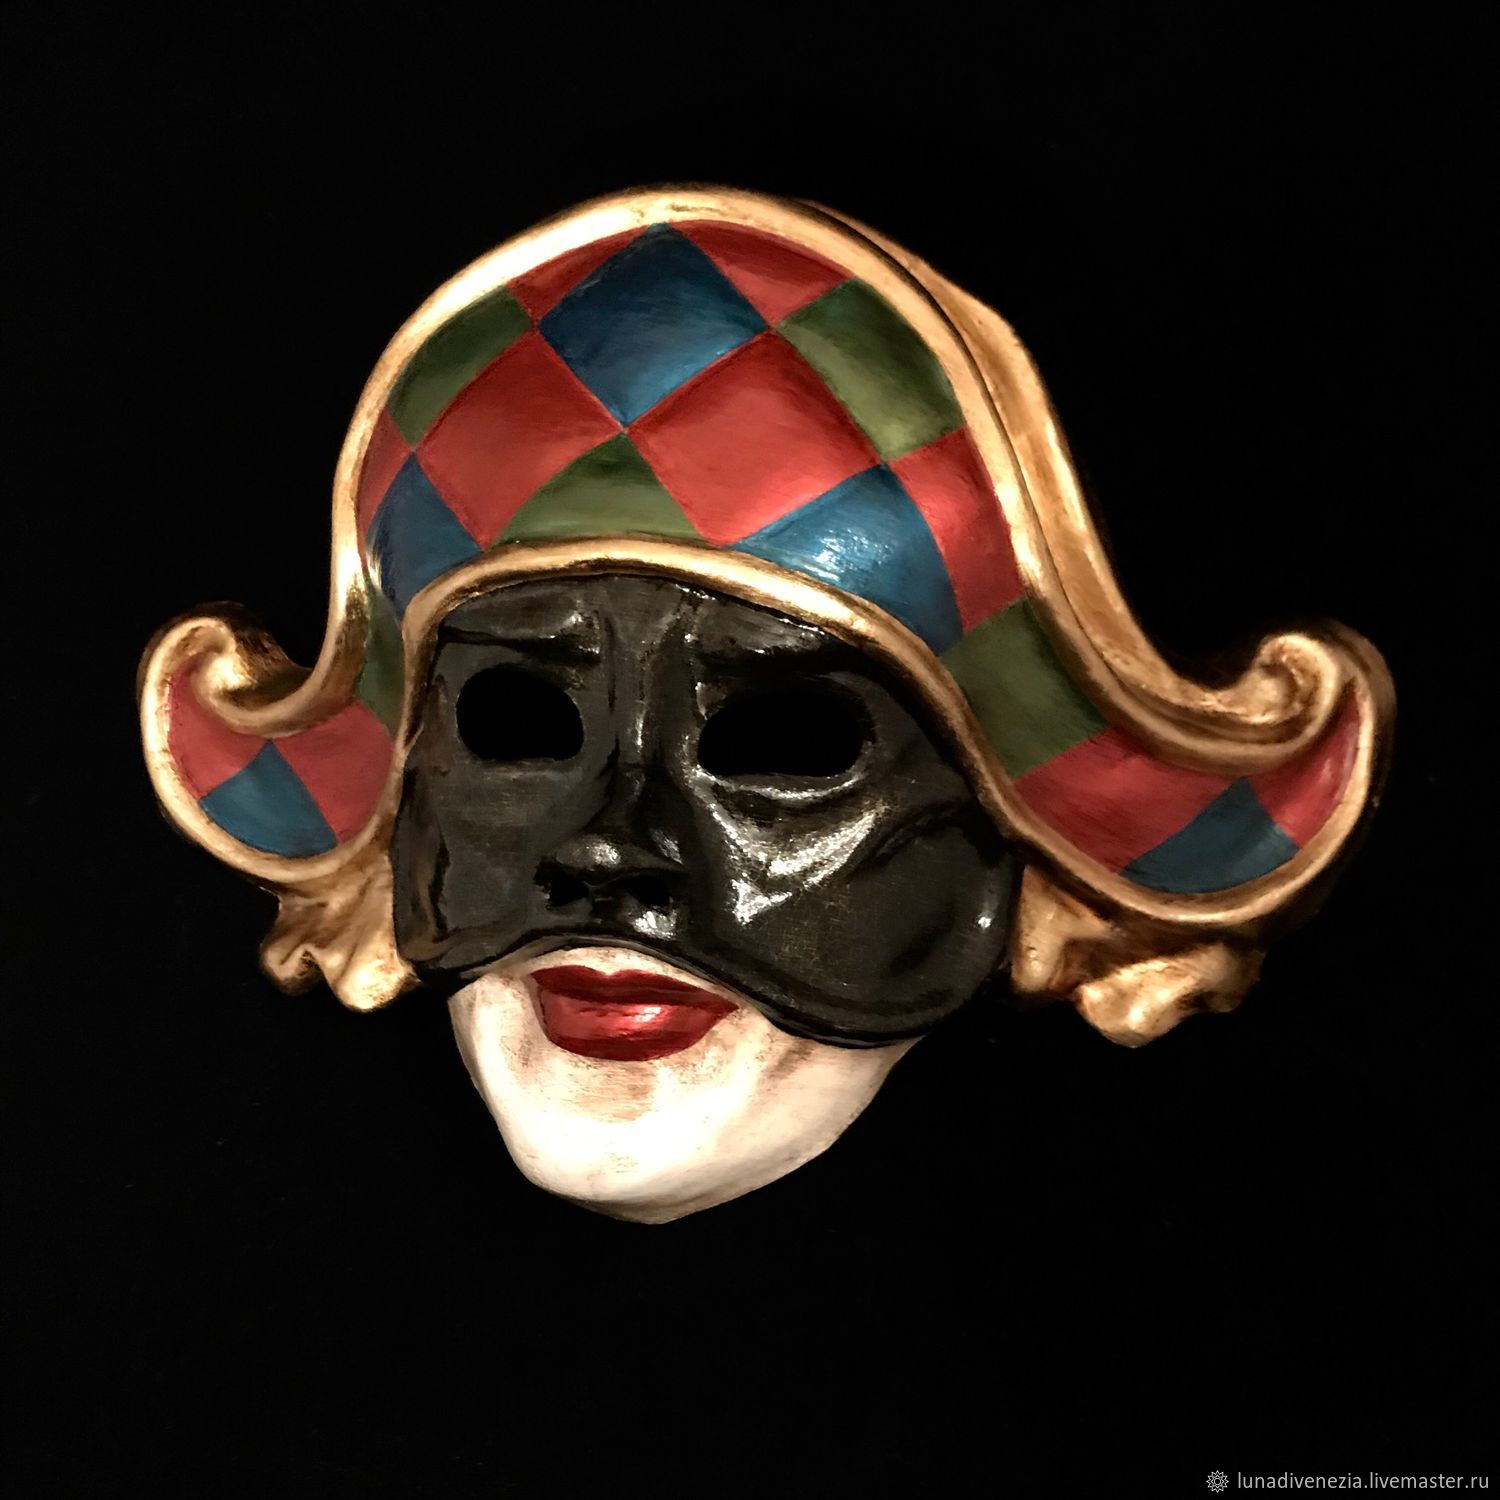 Венецианская маска Коломбина